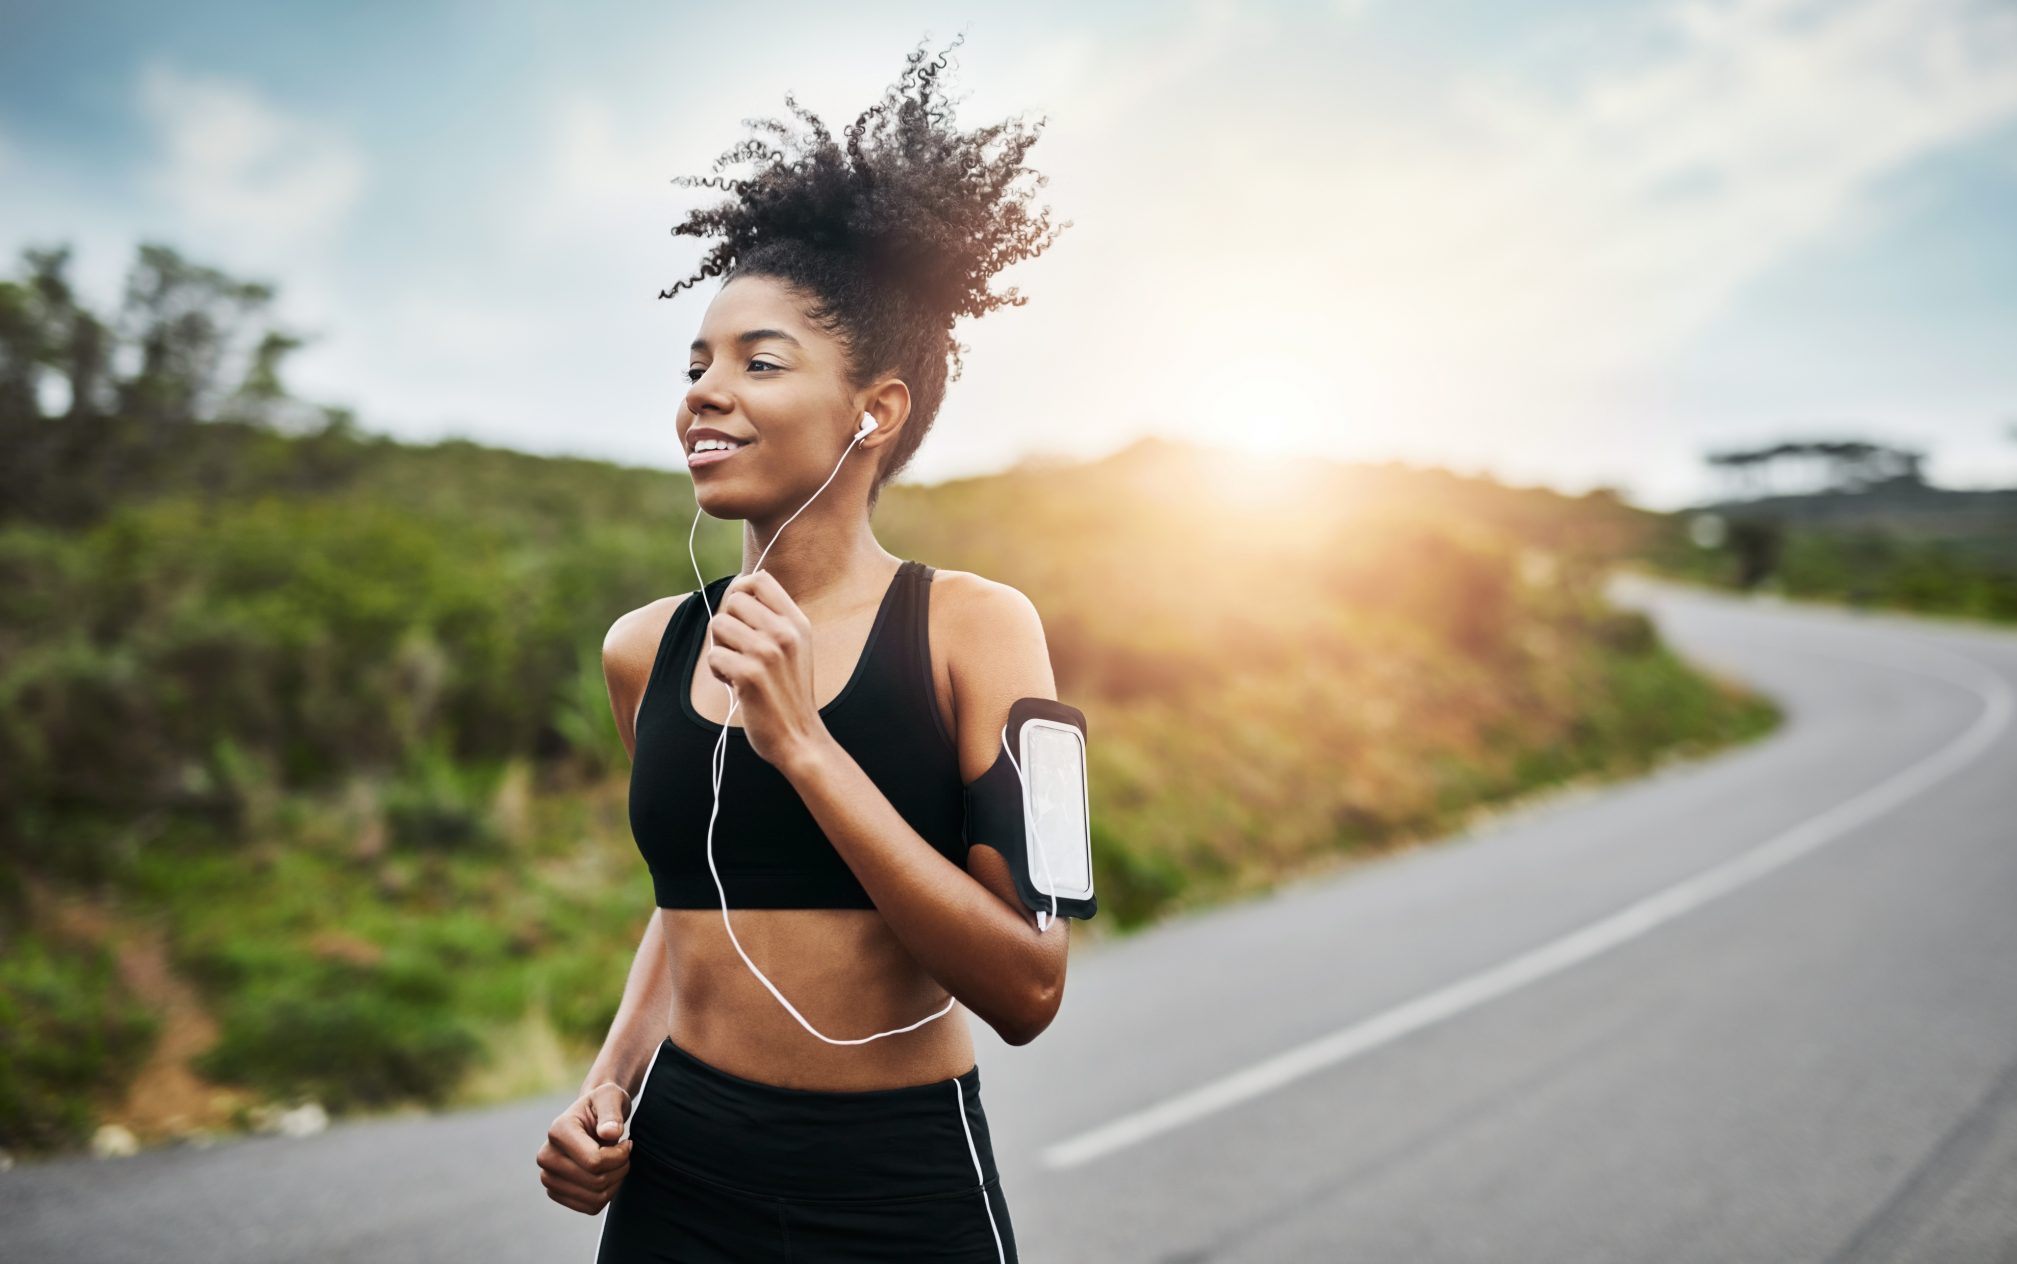 how to run properly happy running girl